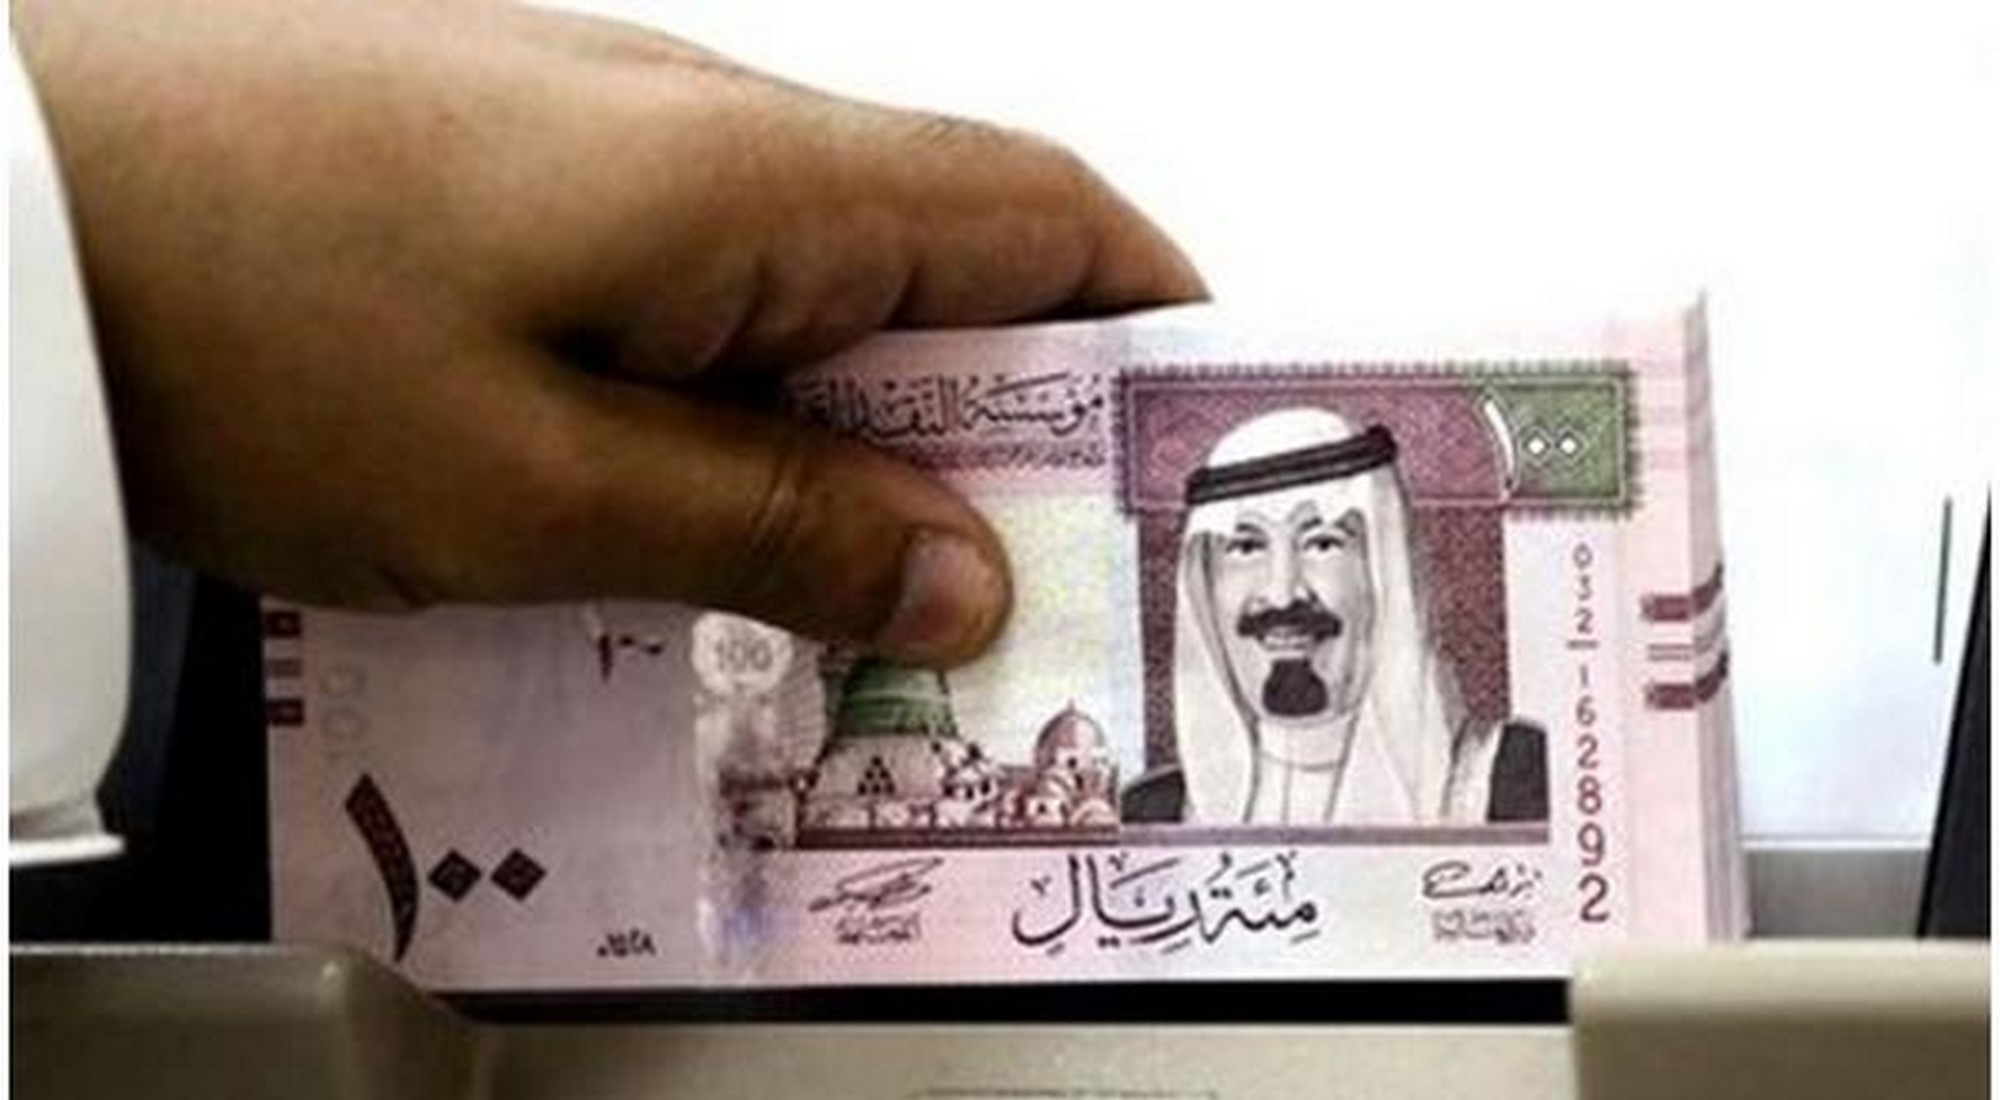 سعر الريال السعودي اليوم الأحد 2 2 2020 في البنوك المصرية مقابل